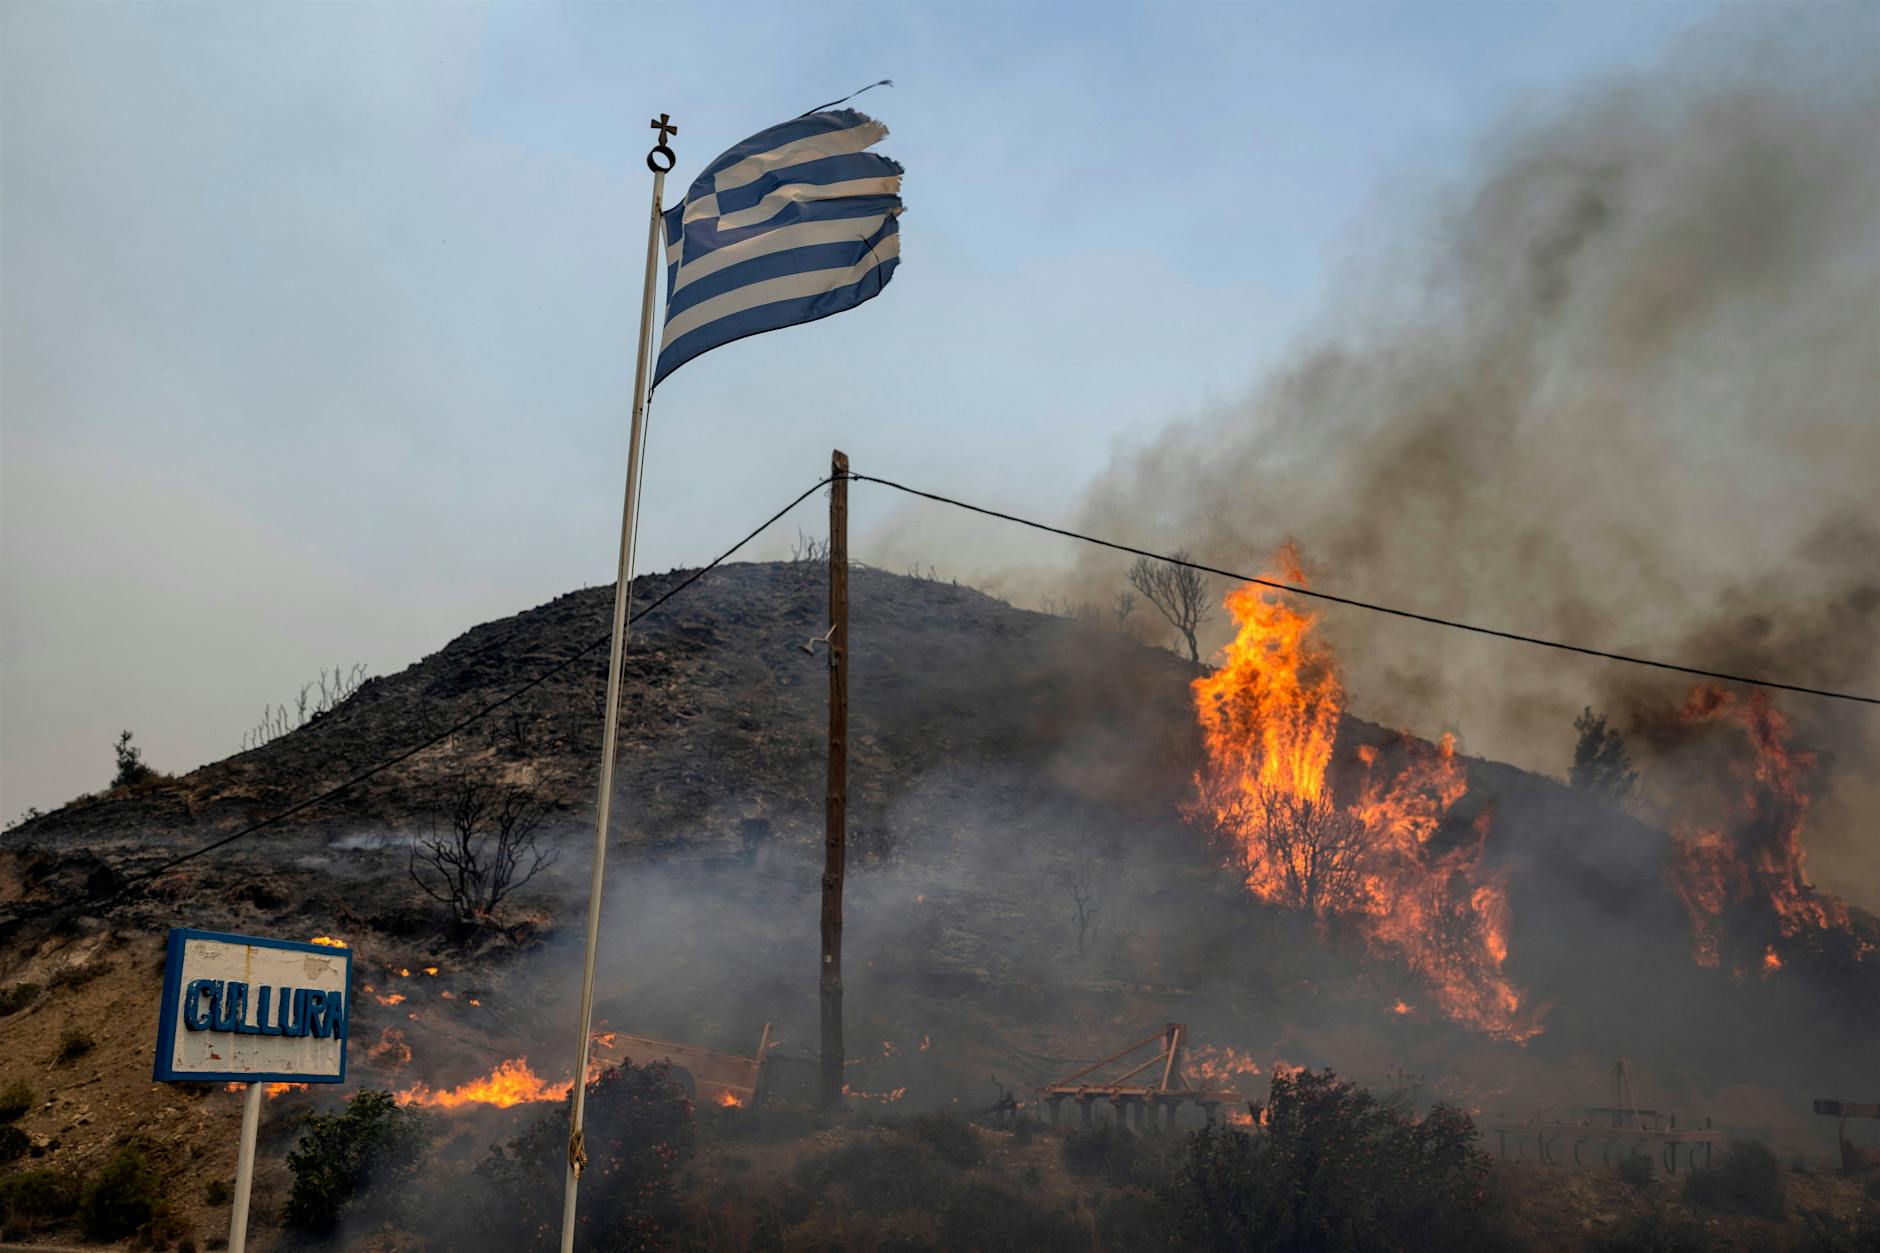 Urlaub in Griechenland: So sollen Touristen vor Waldbränden geschützt werden